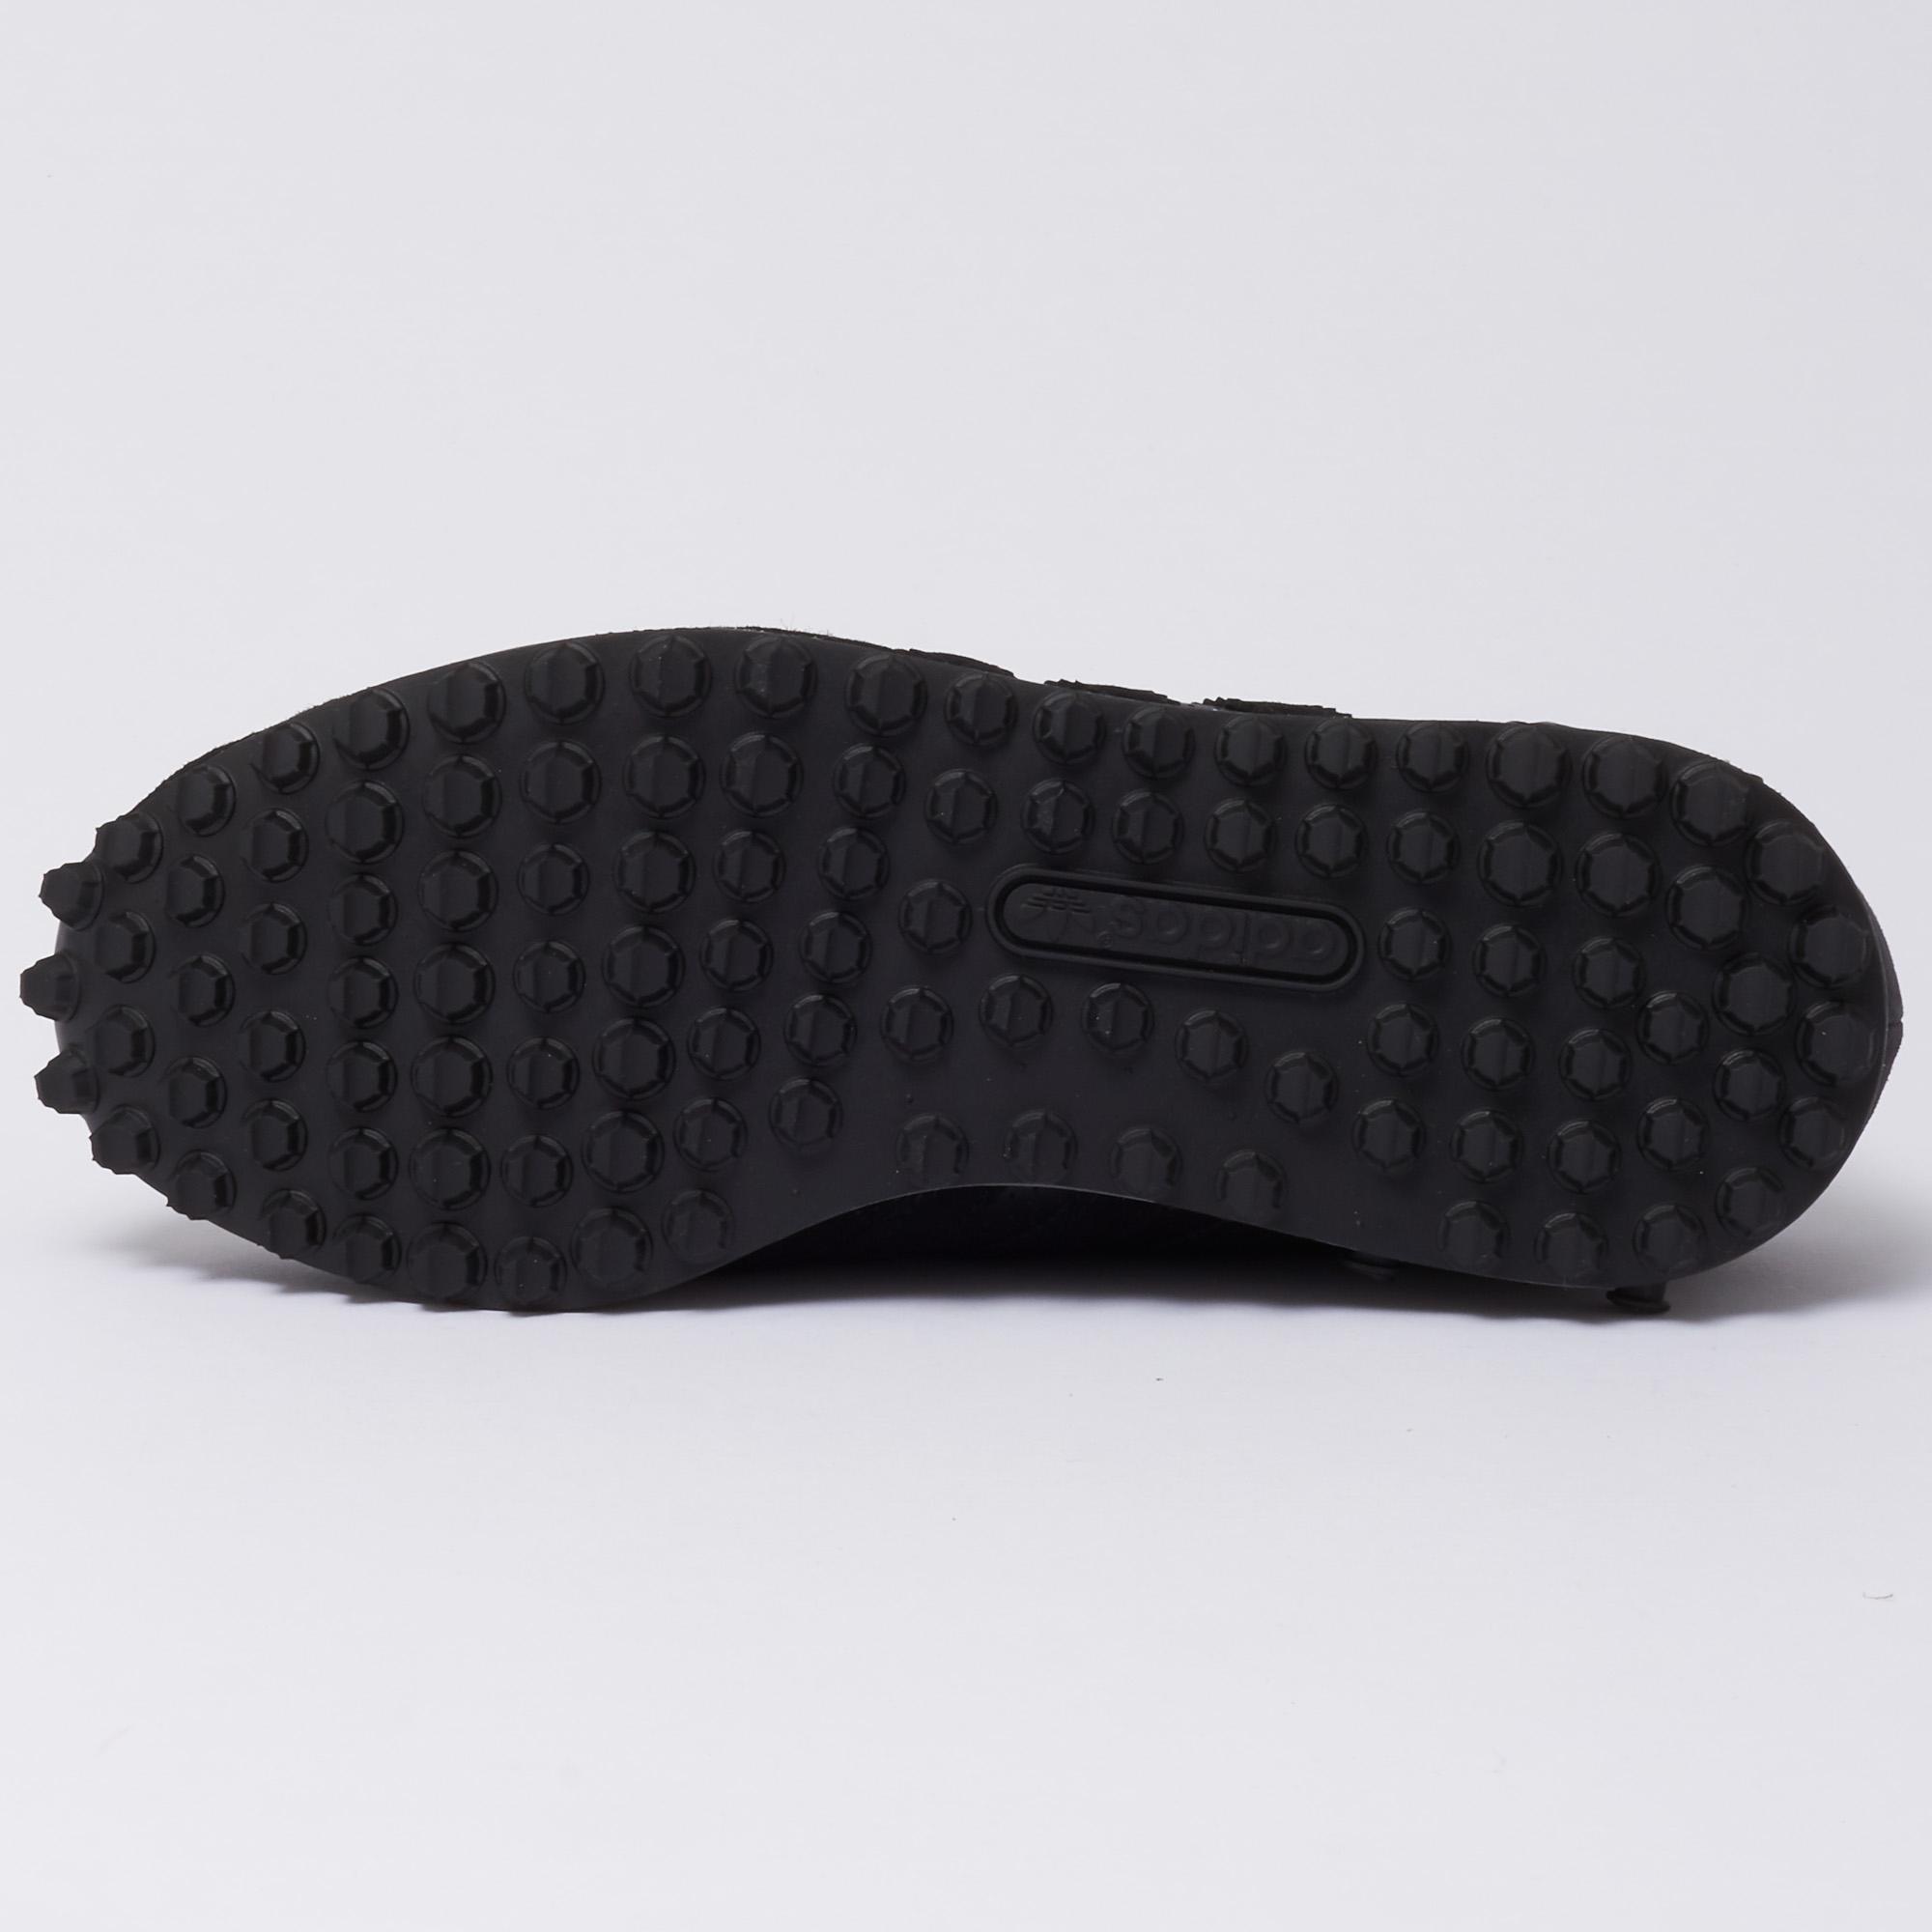 adidas Originals La Trainer Leather Black for Men - Lyst